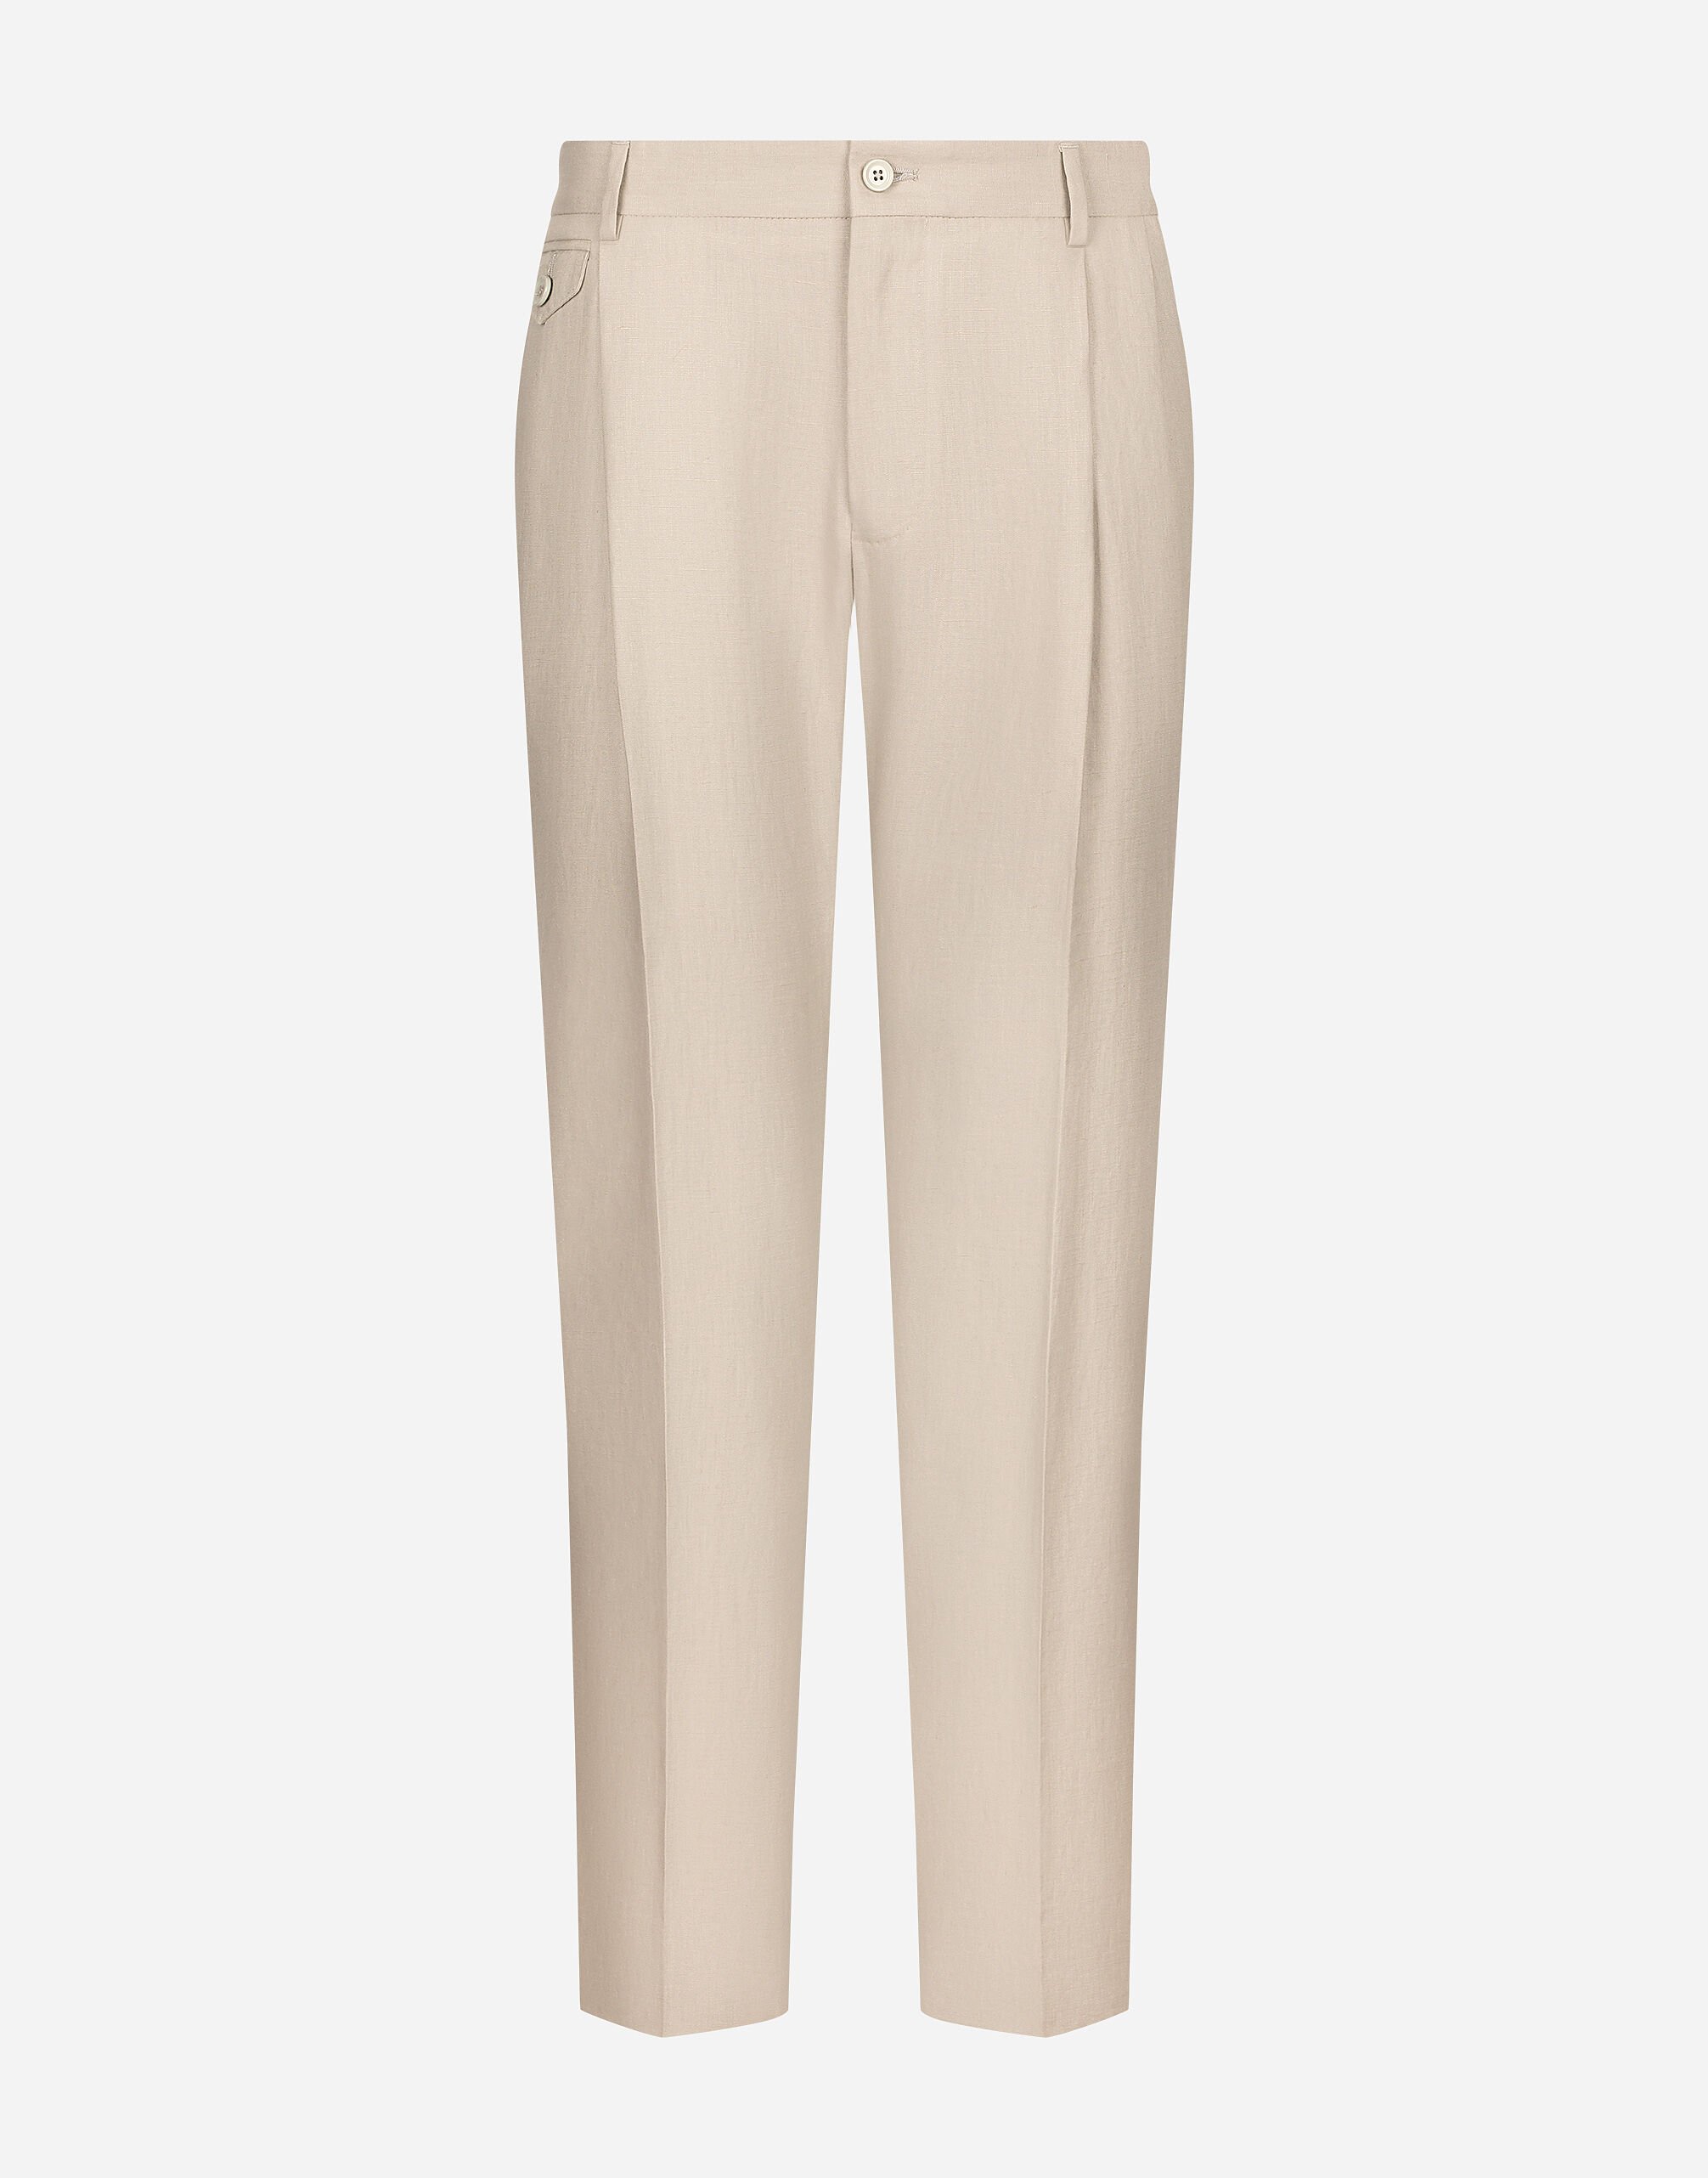 Dolce & Gabbana Linen pants with stretch waistband Print GW0MATHS5RU